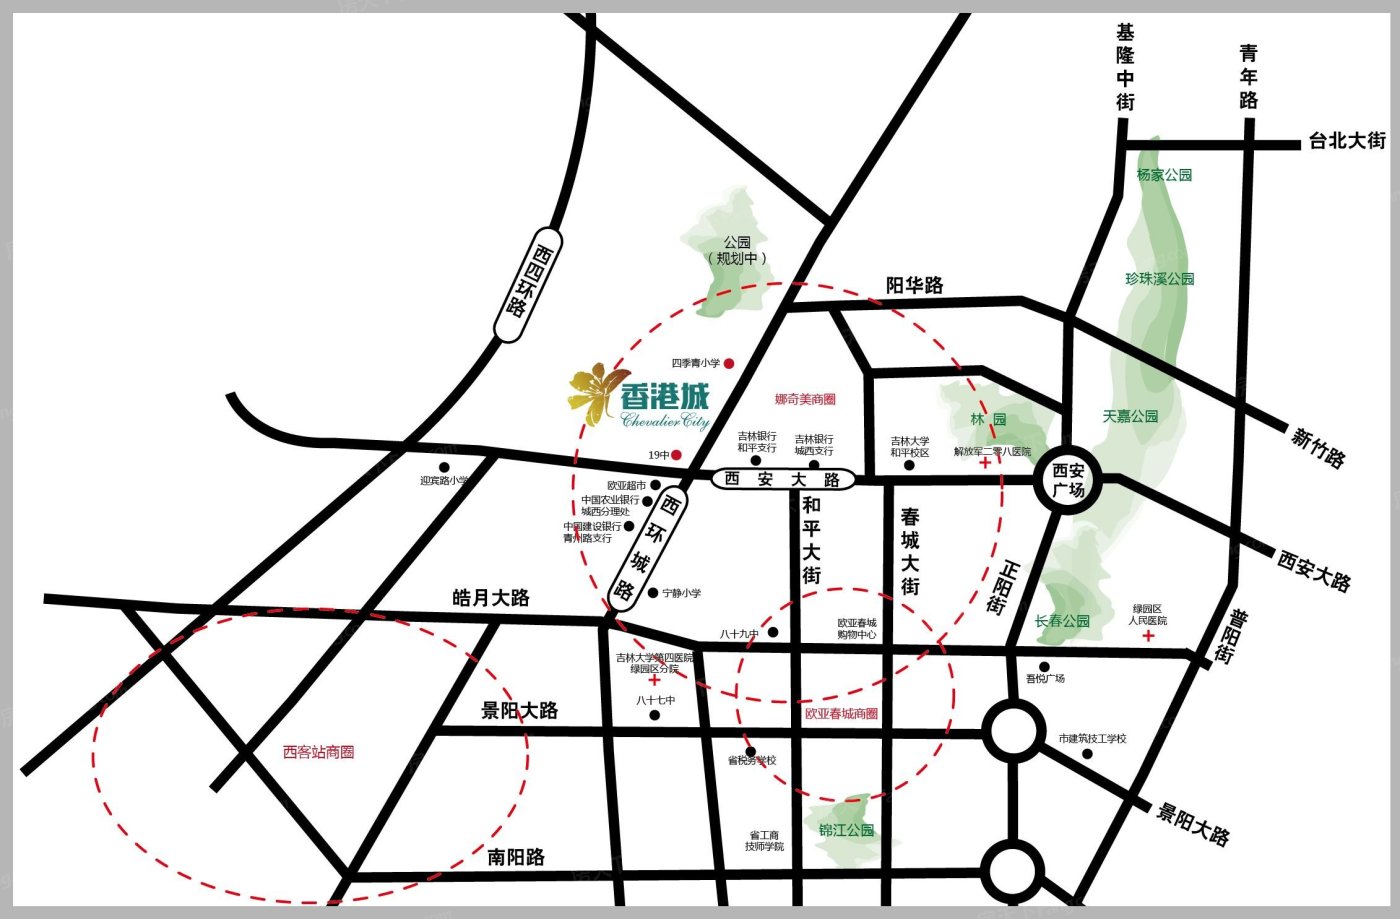 交通图:区域交通图